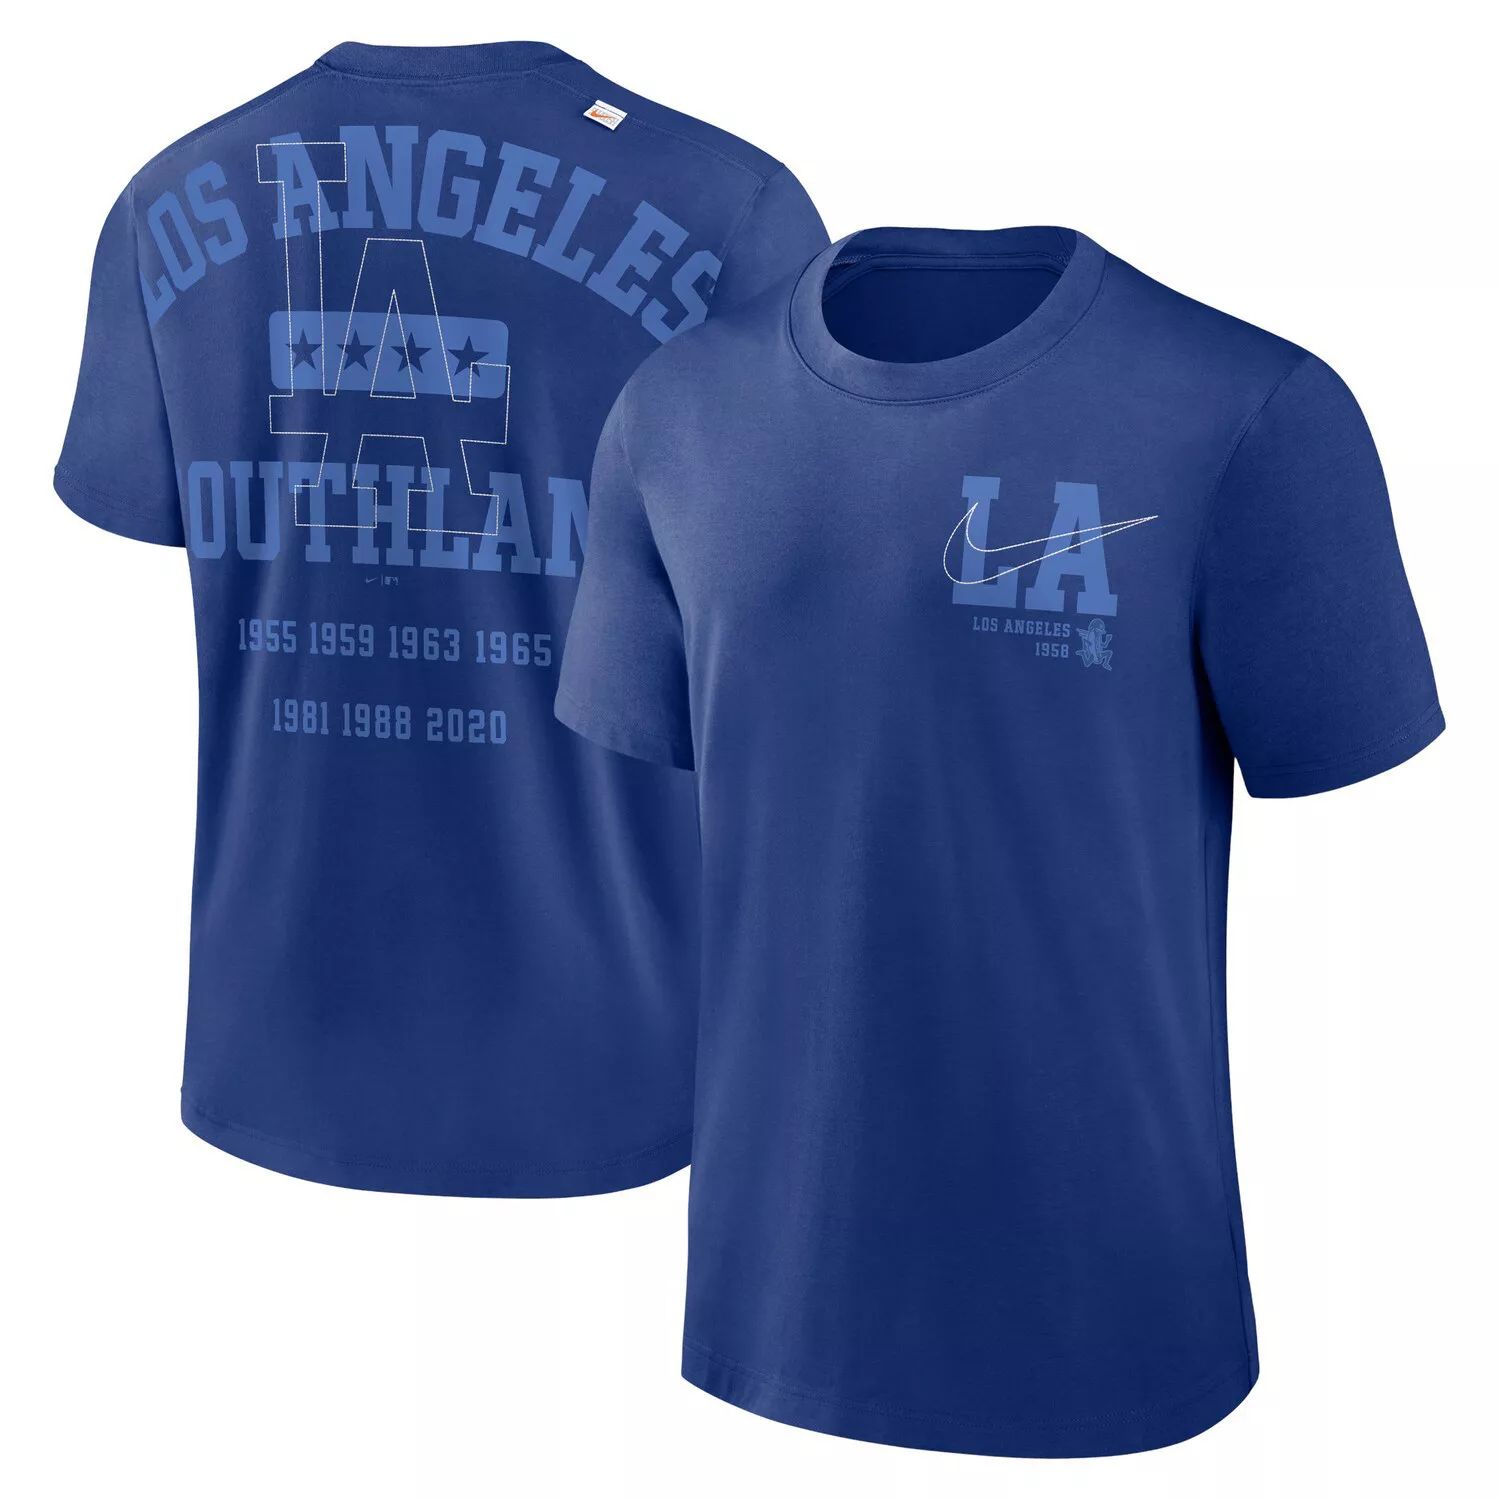 Мужская футболка Royal Los Angeles Dodgers Game Over Nike